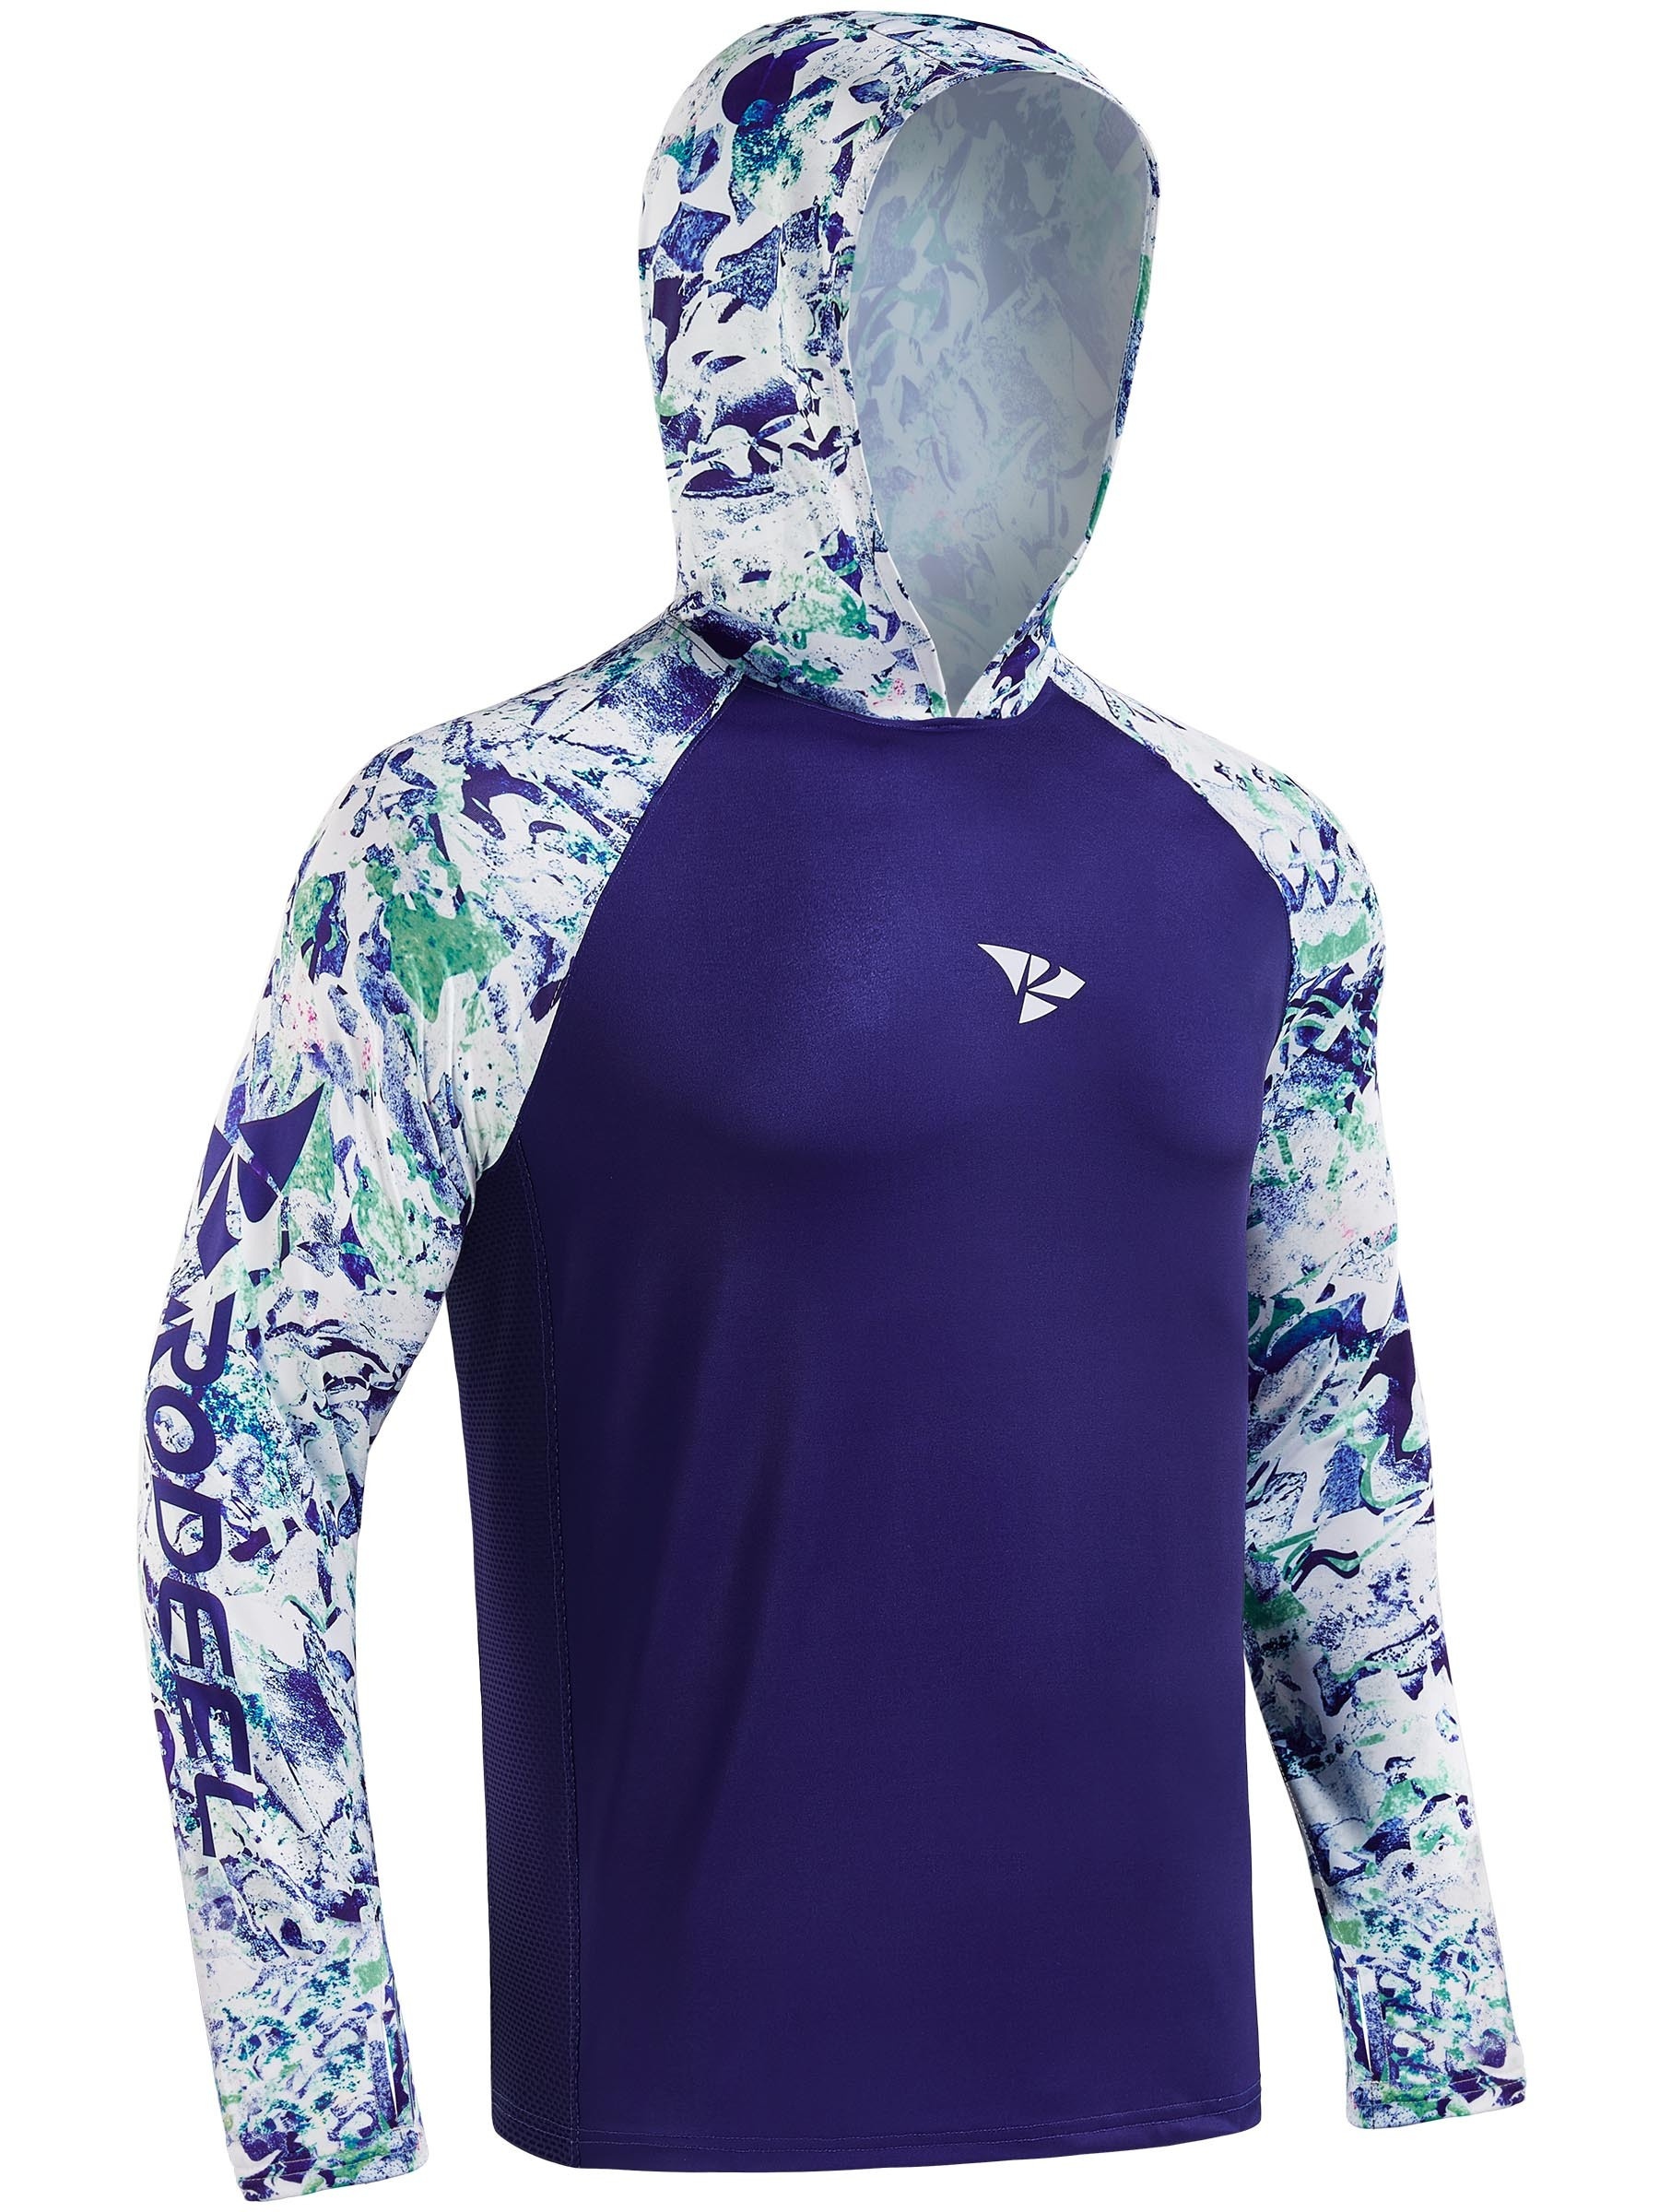 Huk Fishing Shirts Men UPF 50+ Long Sleeve Mask Hooded Angling Clothes Camisa Pesca UV Protection